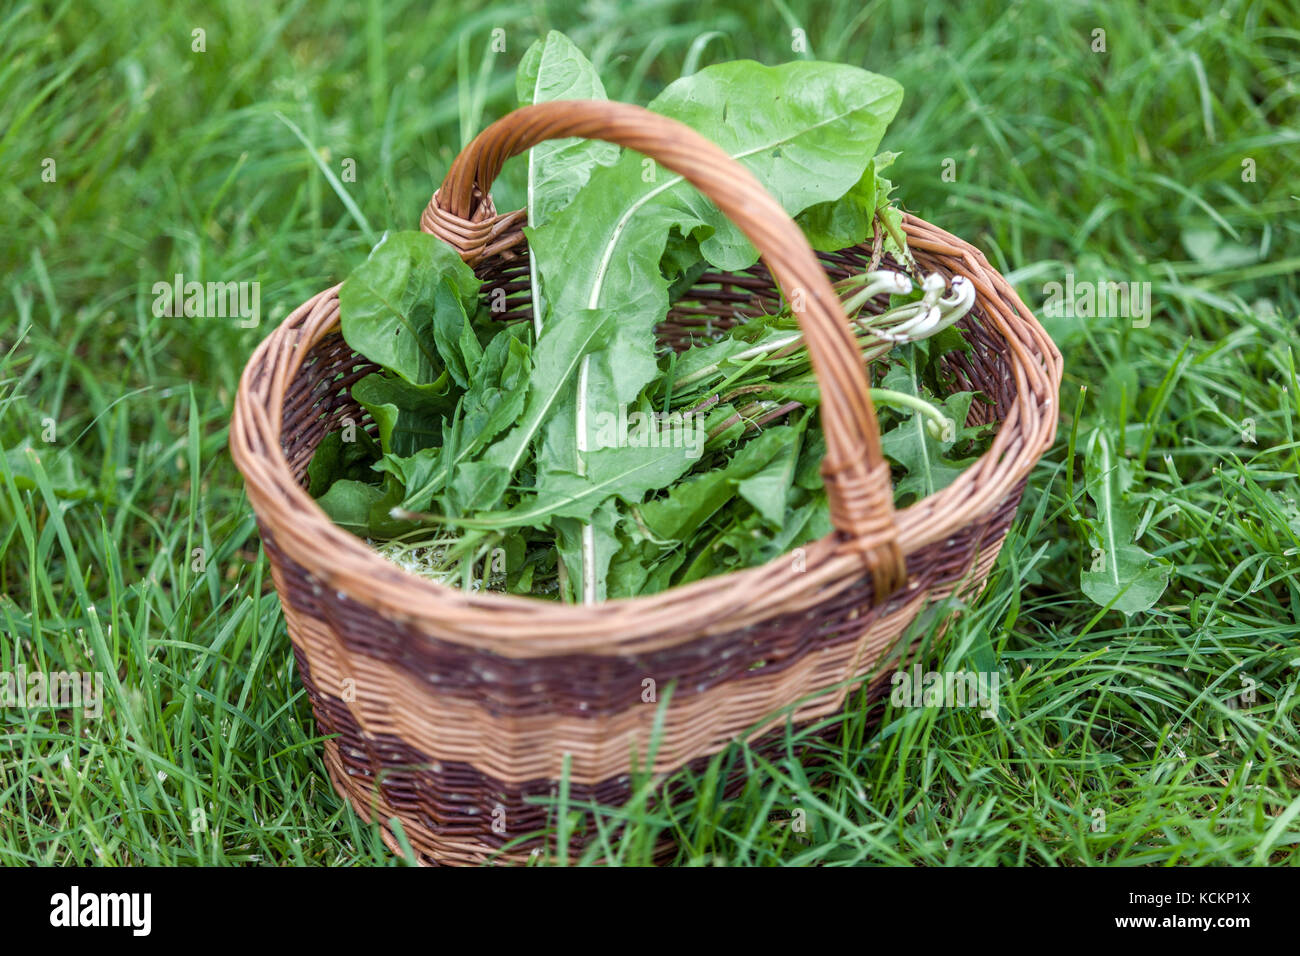 Cestino di vimini foglie di delione raccolte fresche foglie verdi di Taraxacum officinale fresche in cesto posato in erba Foto Stock